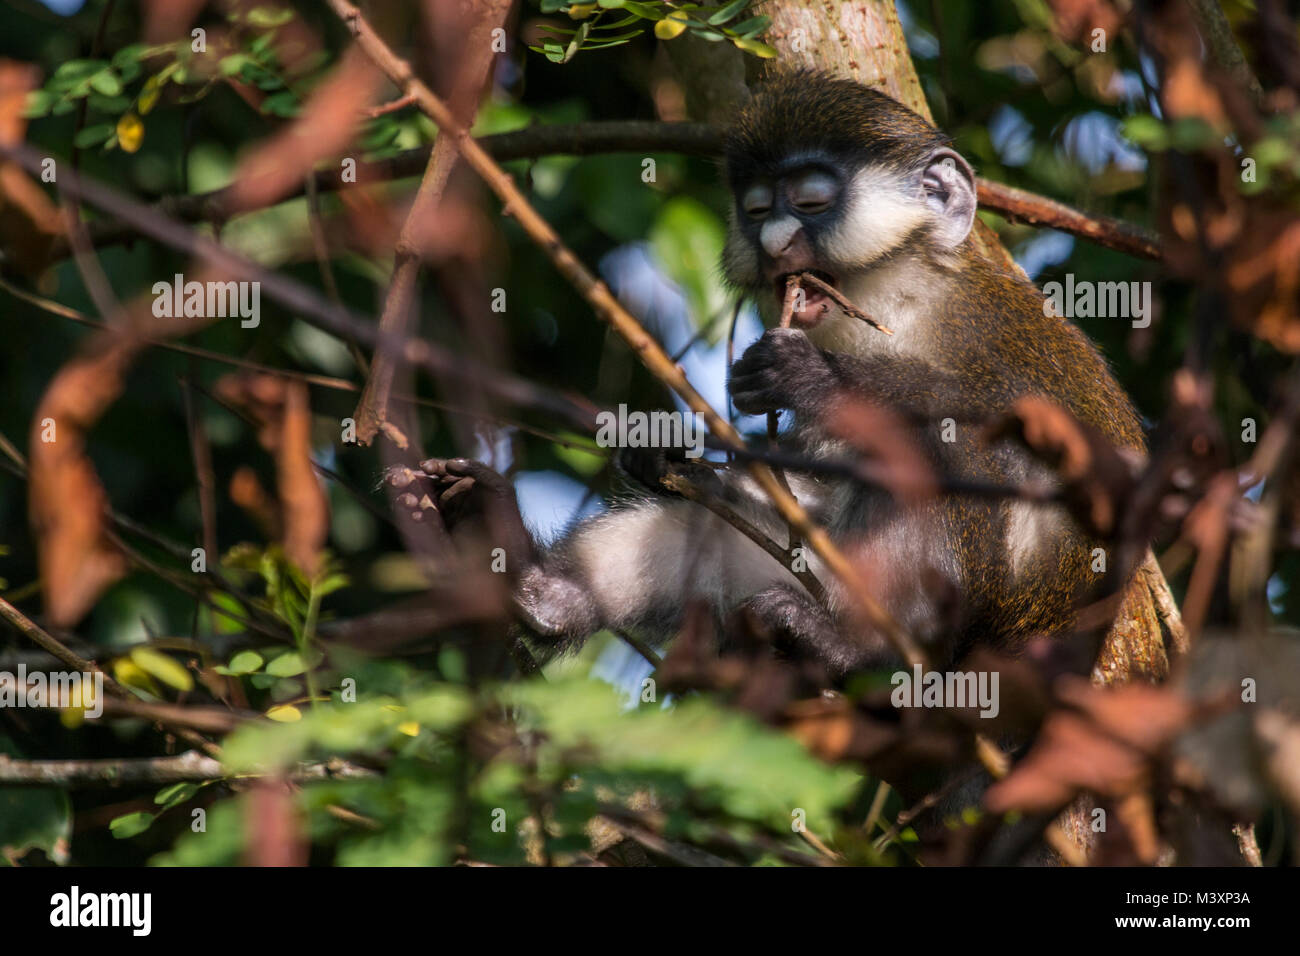 Red-tailed monkey (Cercopithecus ascanius) di mangiare in un albero, Uganda. Foto Stock